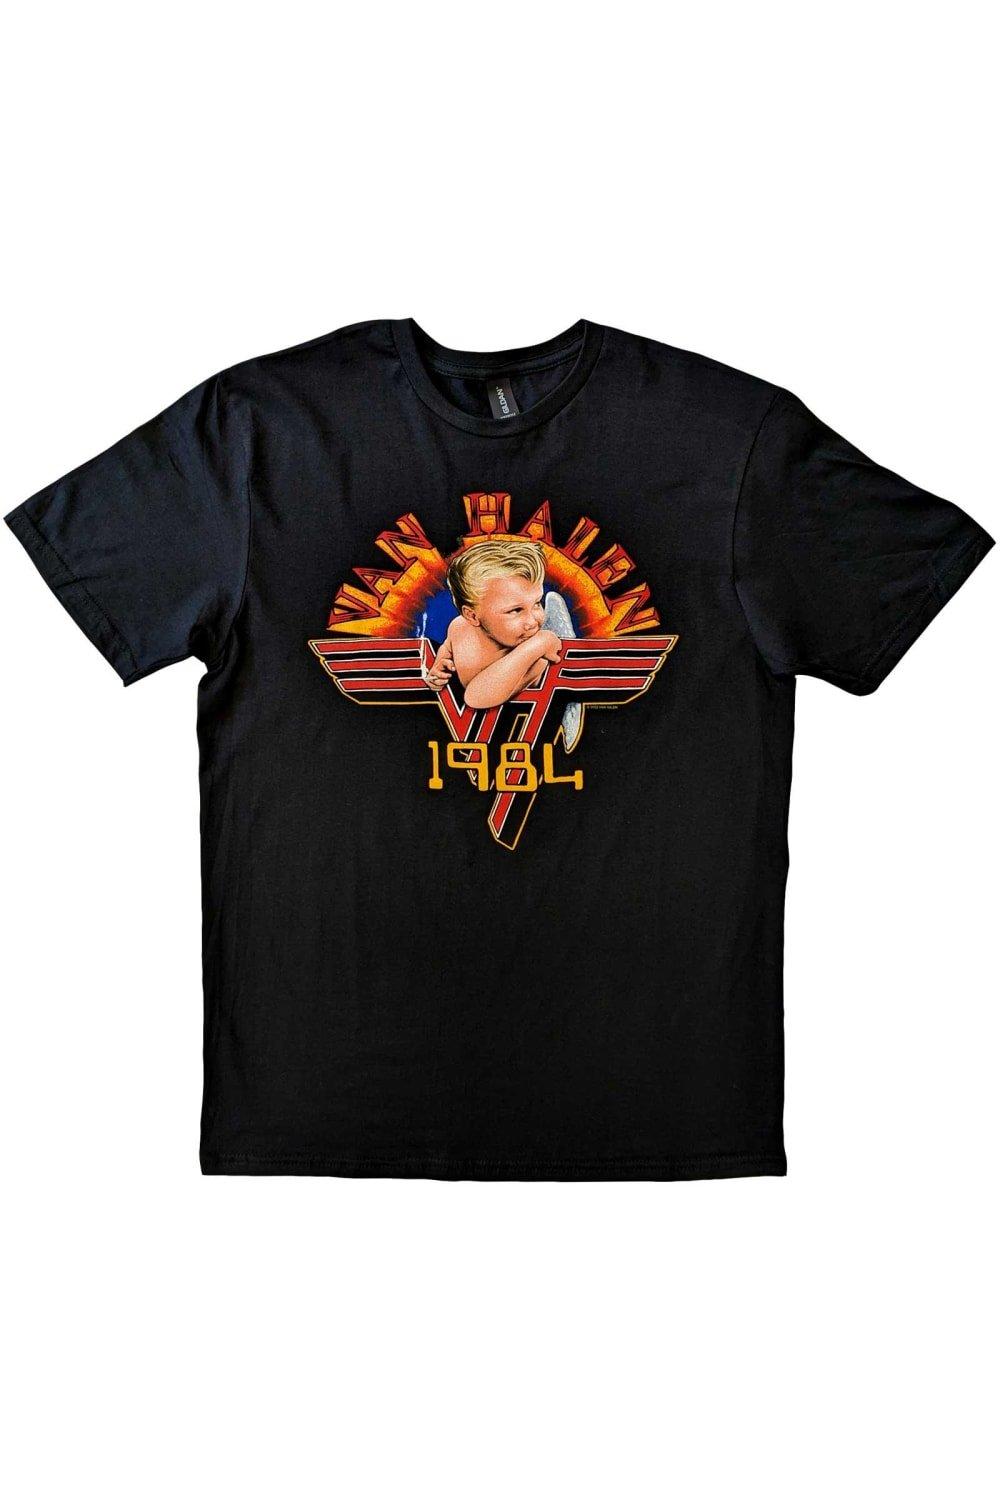 Хлопковая футболка Cherub 1984 года Van Halen, черный бокс сет van halen box the collection van halen 1978 1984 черный винил